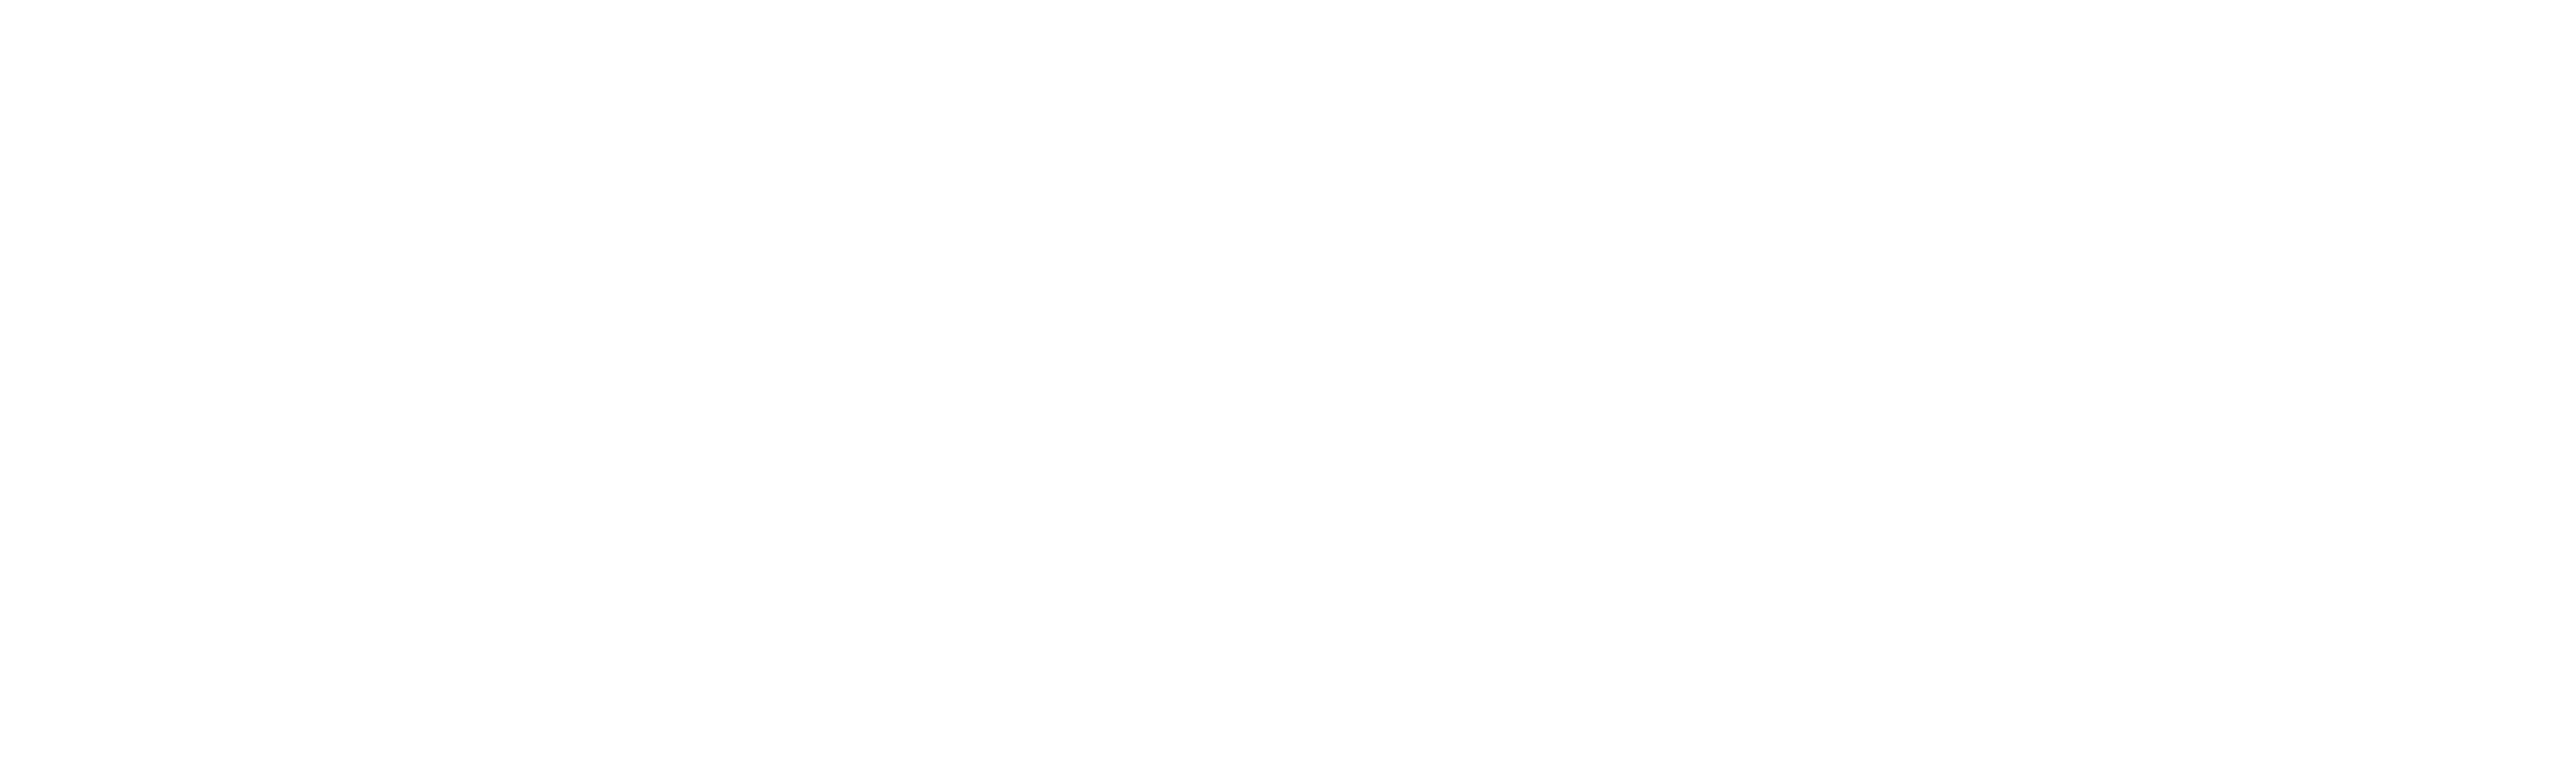 Restored Kings Logo White